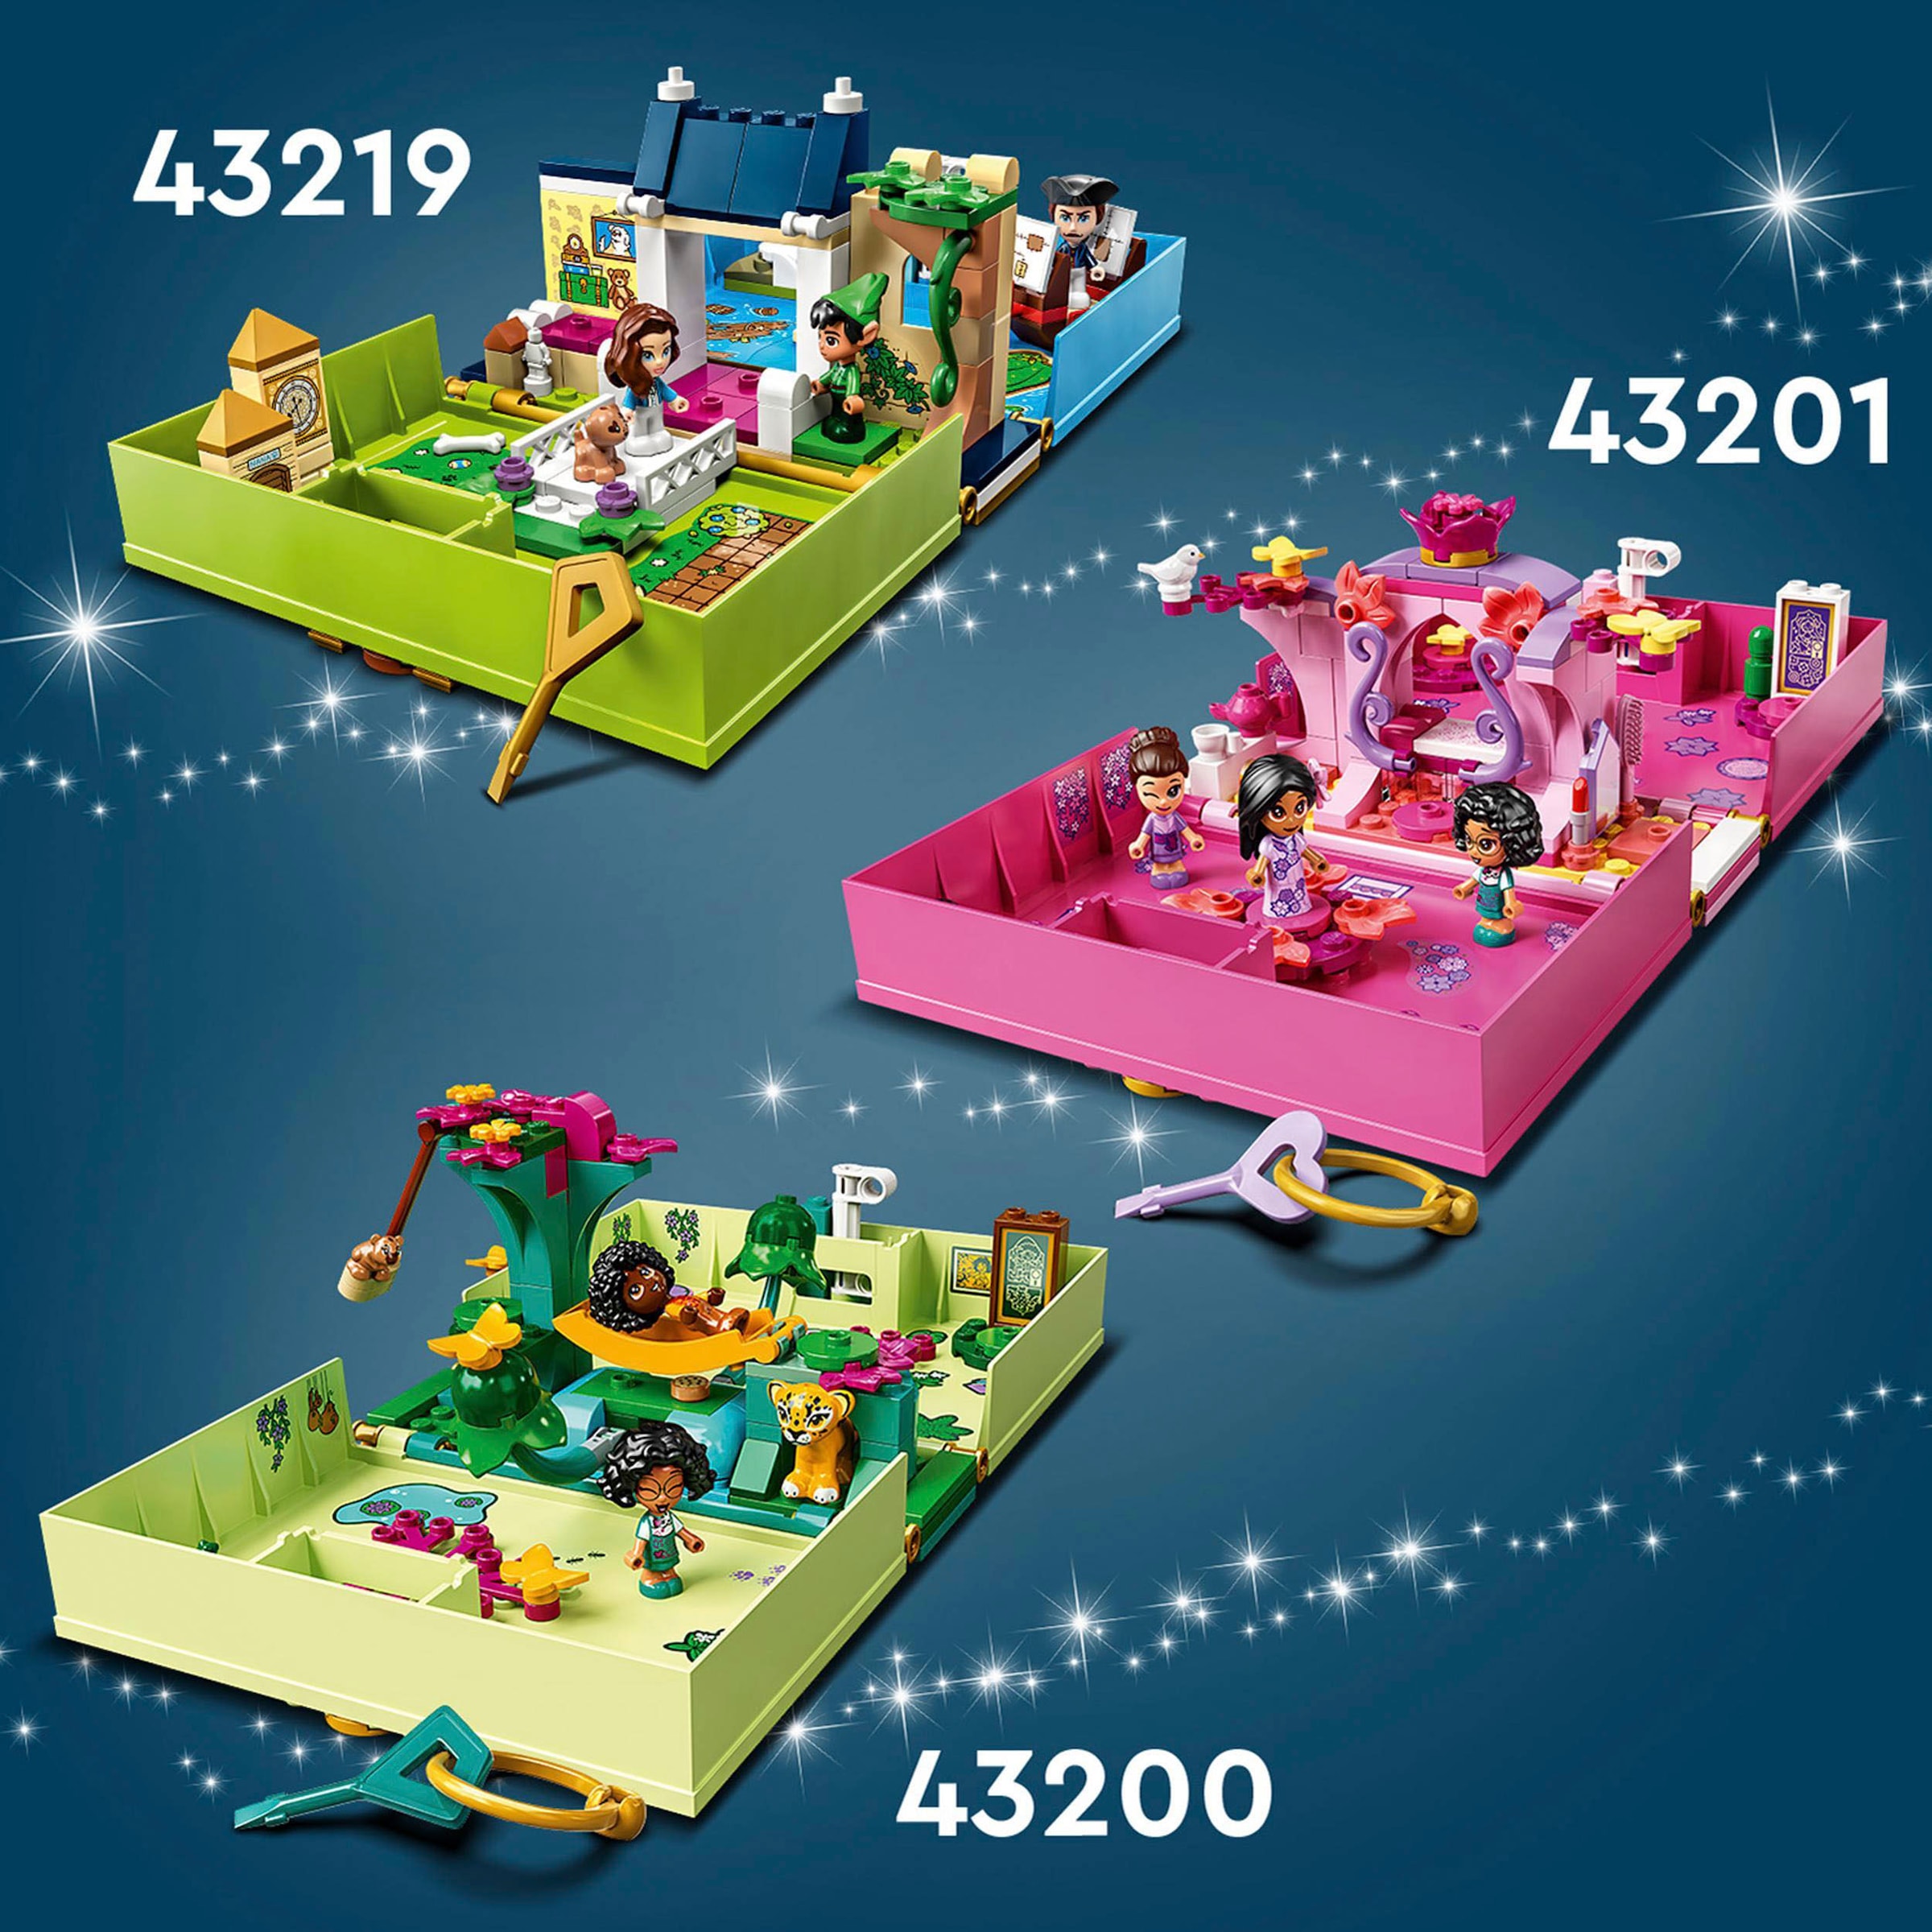 LEGO® Konstruktionsspielsteine »Peter Pan & Wendy Märchenbuch-Abenteuer (43220), LEGO® Disney Classic«, (111 St.)